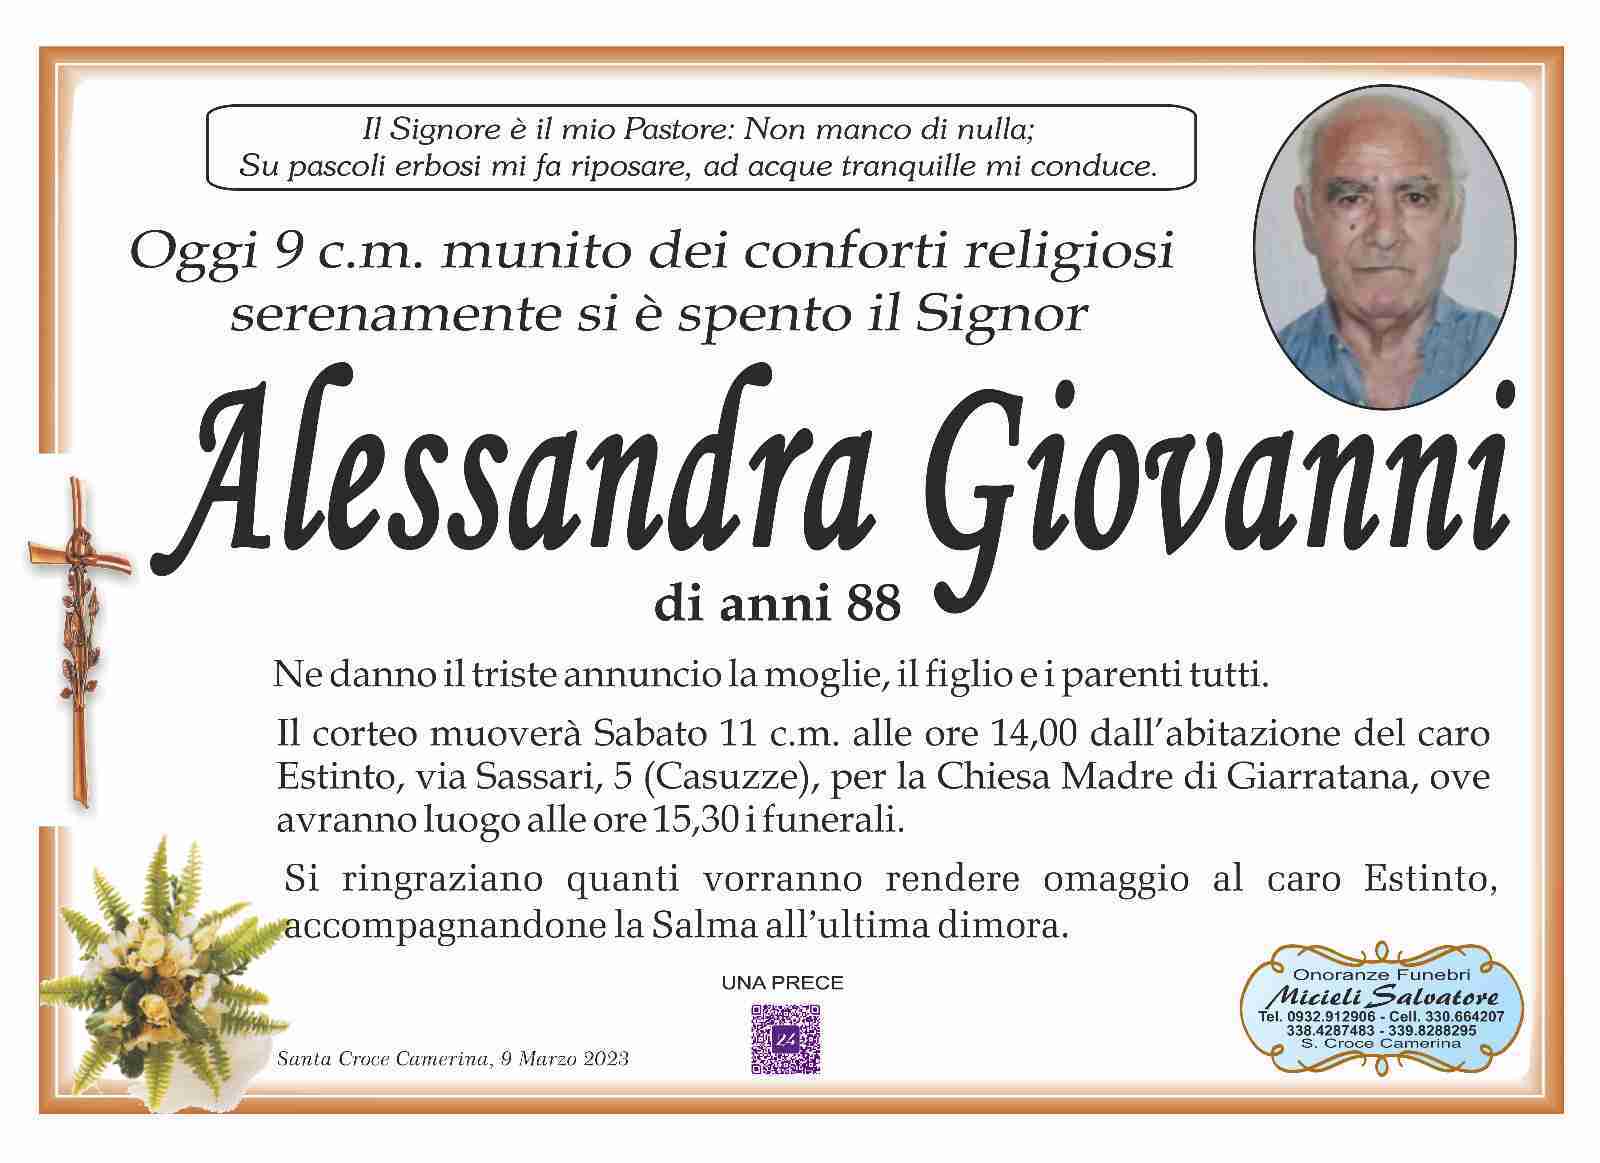 Giovanni Alessandra